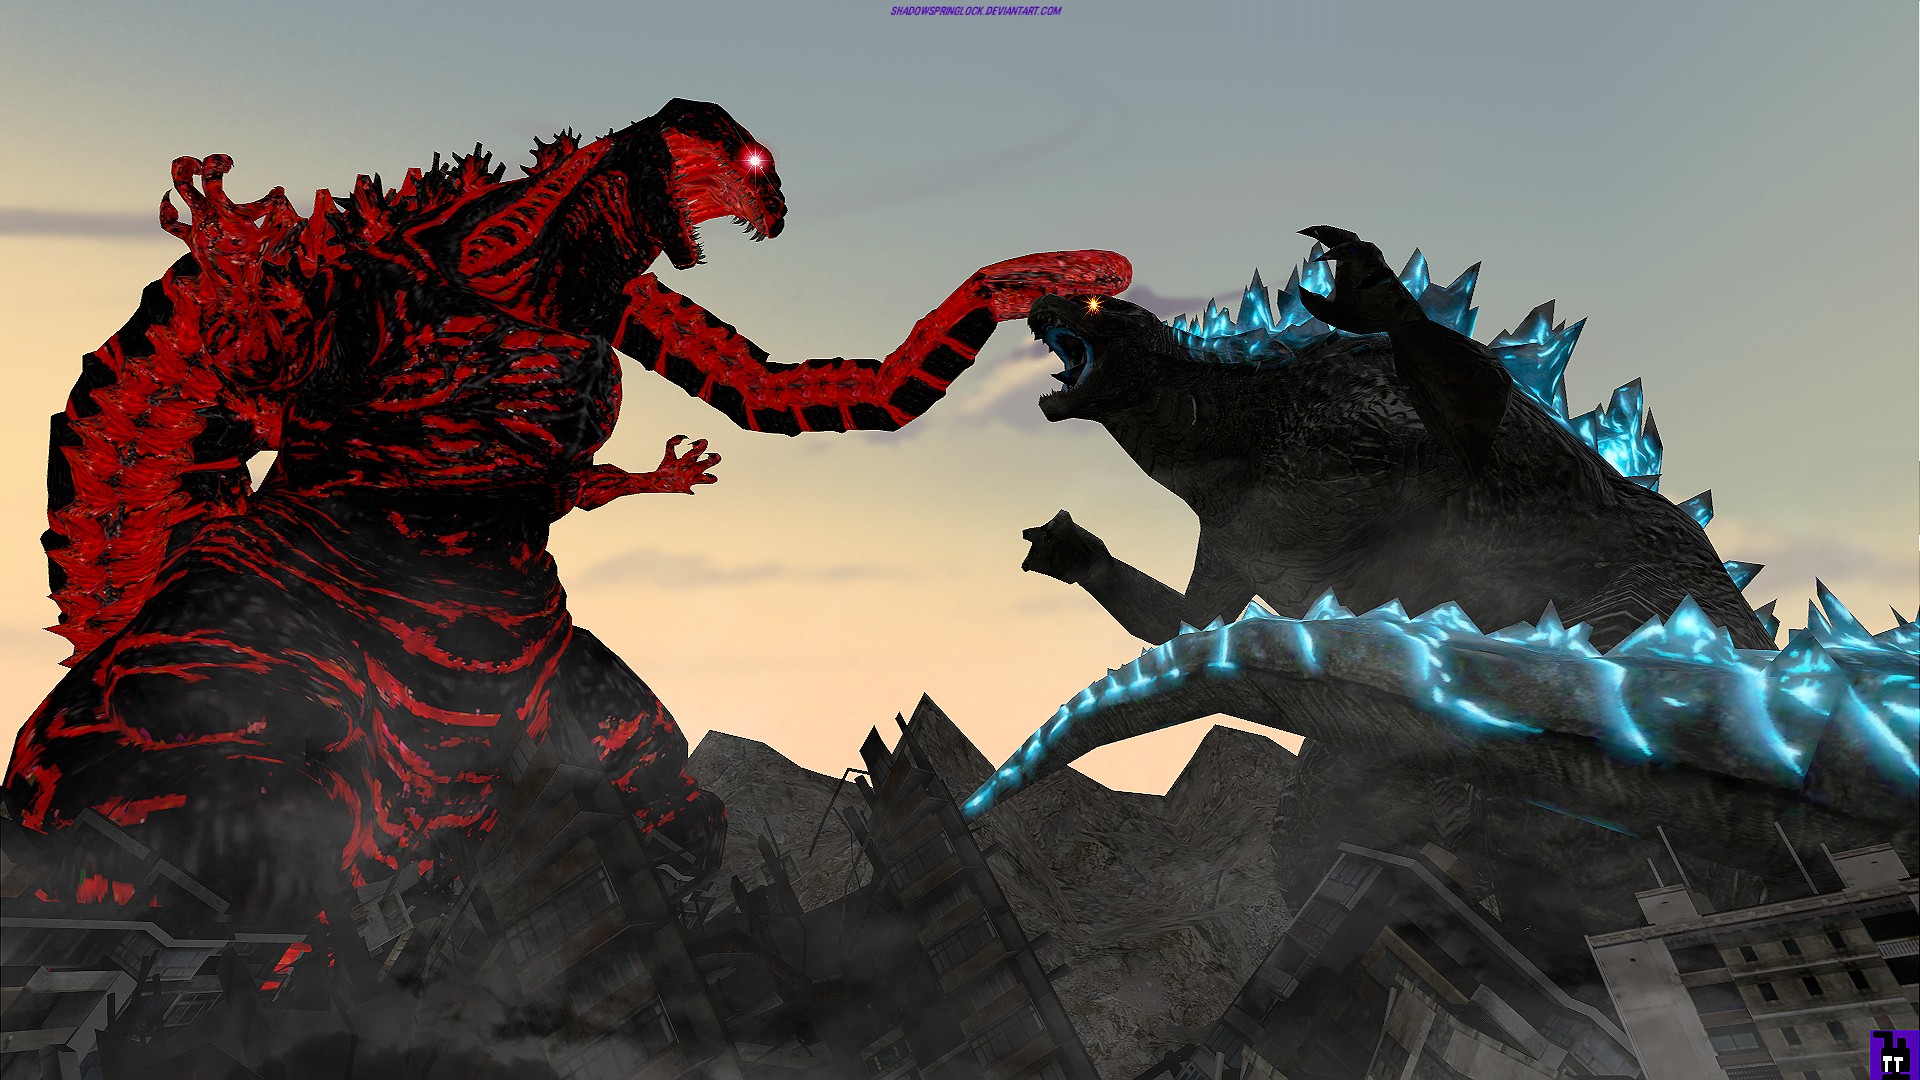 Godzilla Wallpaper Hd Android - Godzilla 3D Wallpapers - Top Free